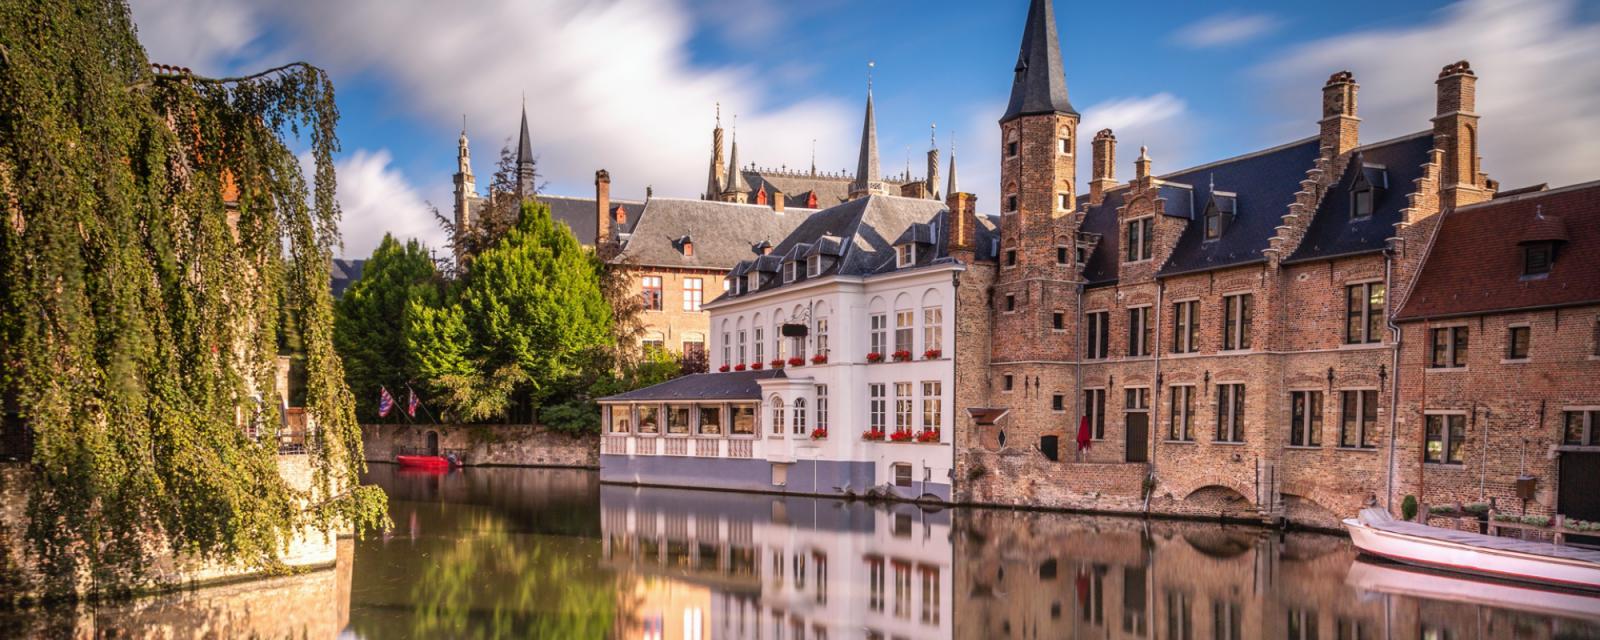 De mooiste kerken en heilige gebouwen in Brugge 